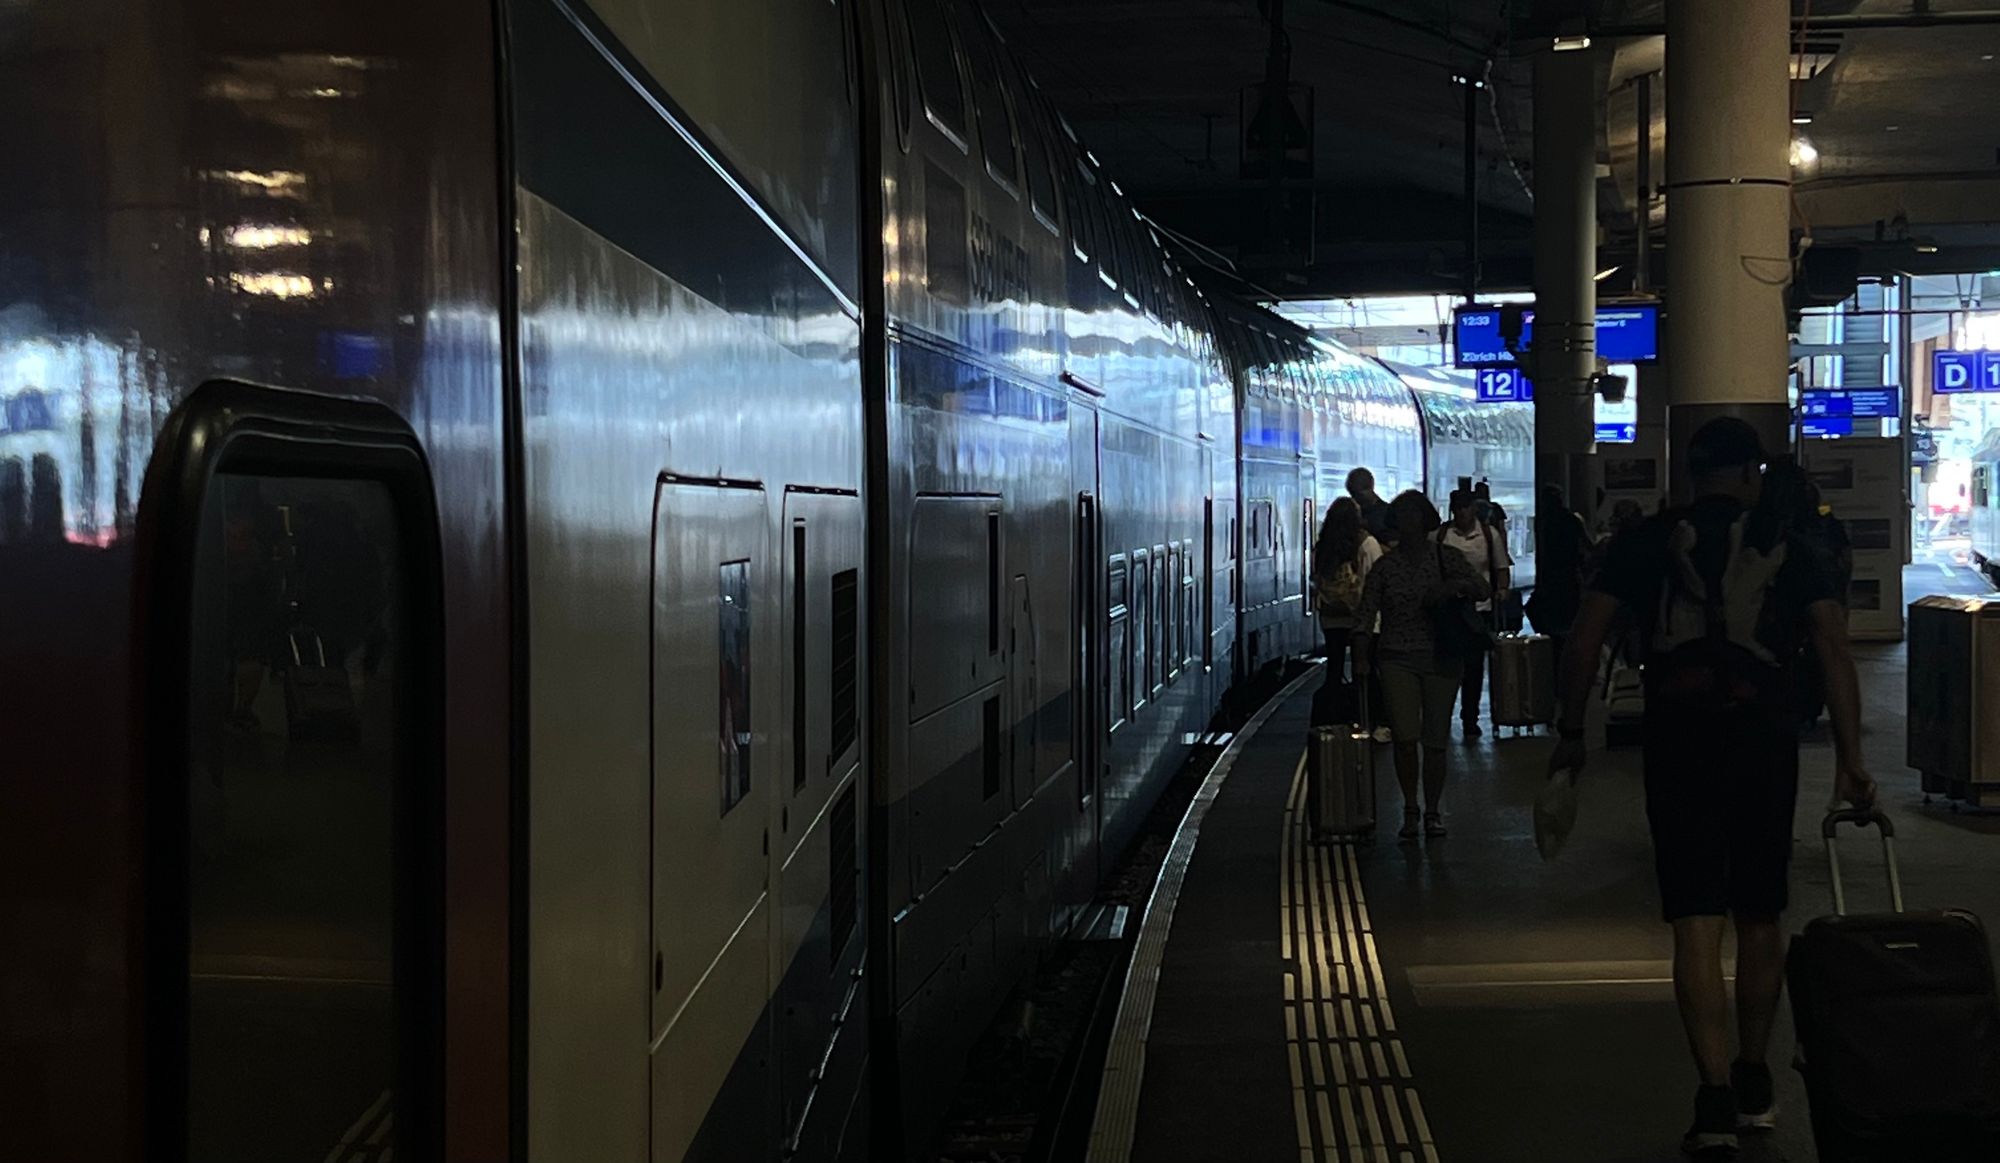 Perron am Bahnhof Bern, ein Zug auf der Linken Seite, Menschen steigen ein